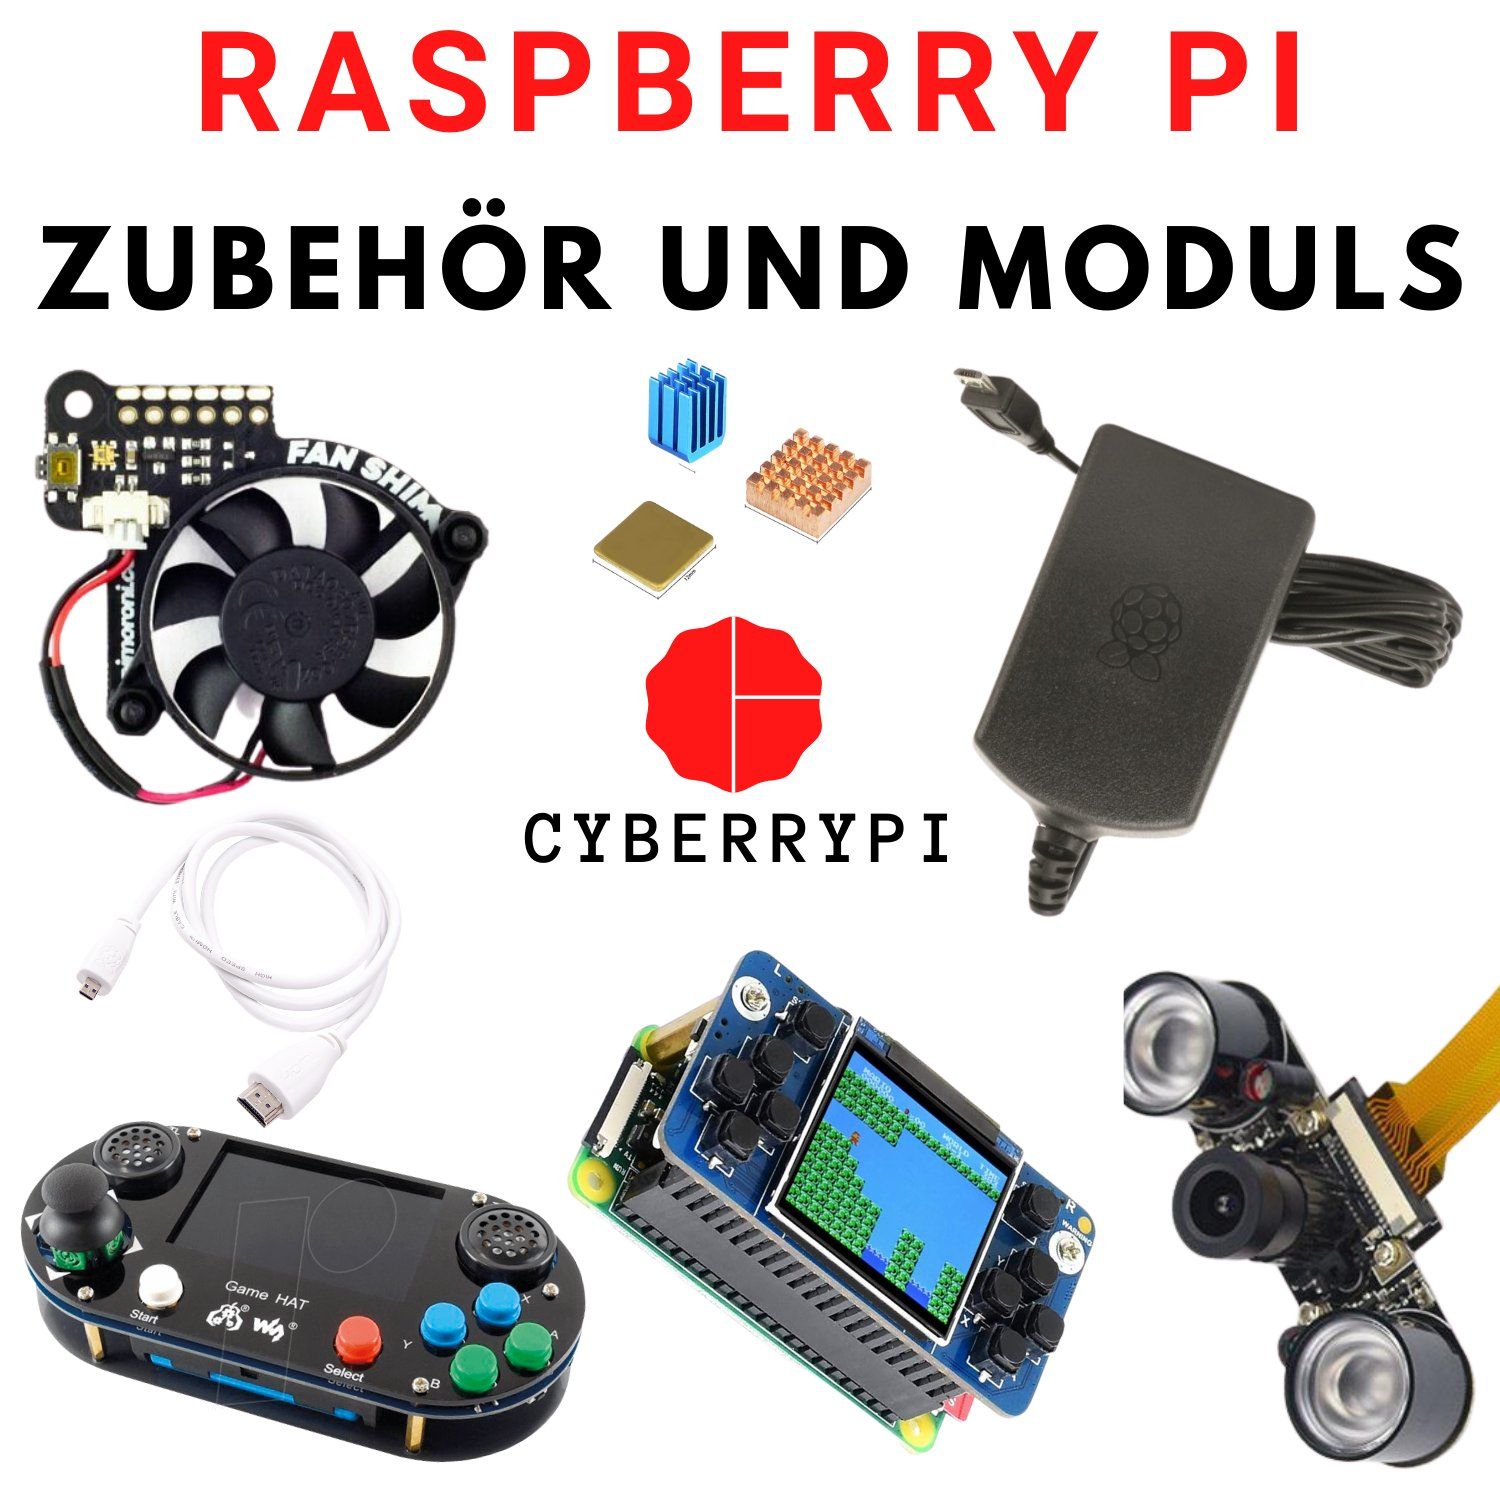 Raspberry Pi Zubehör und Moduls